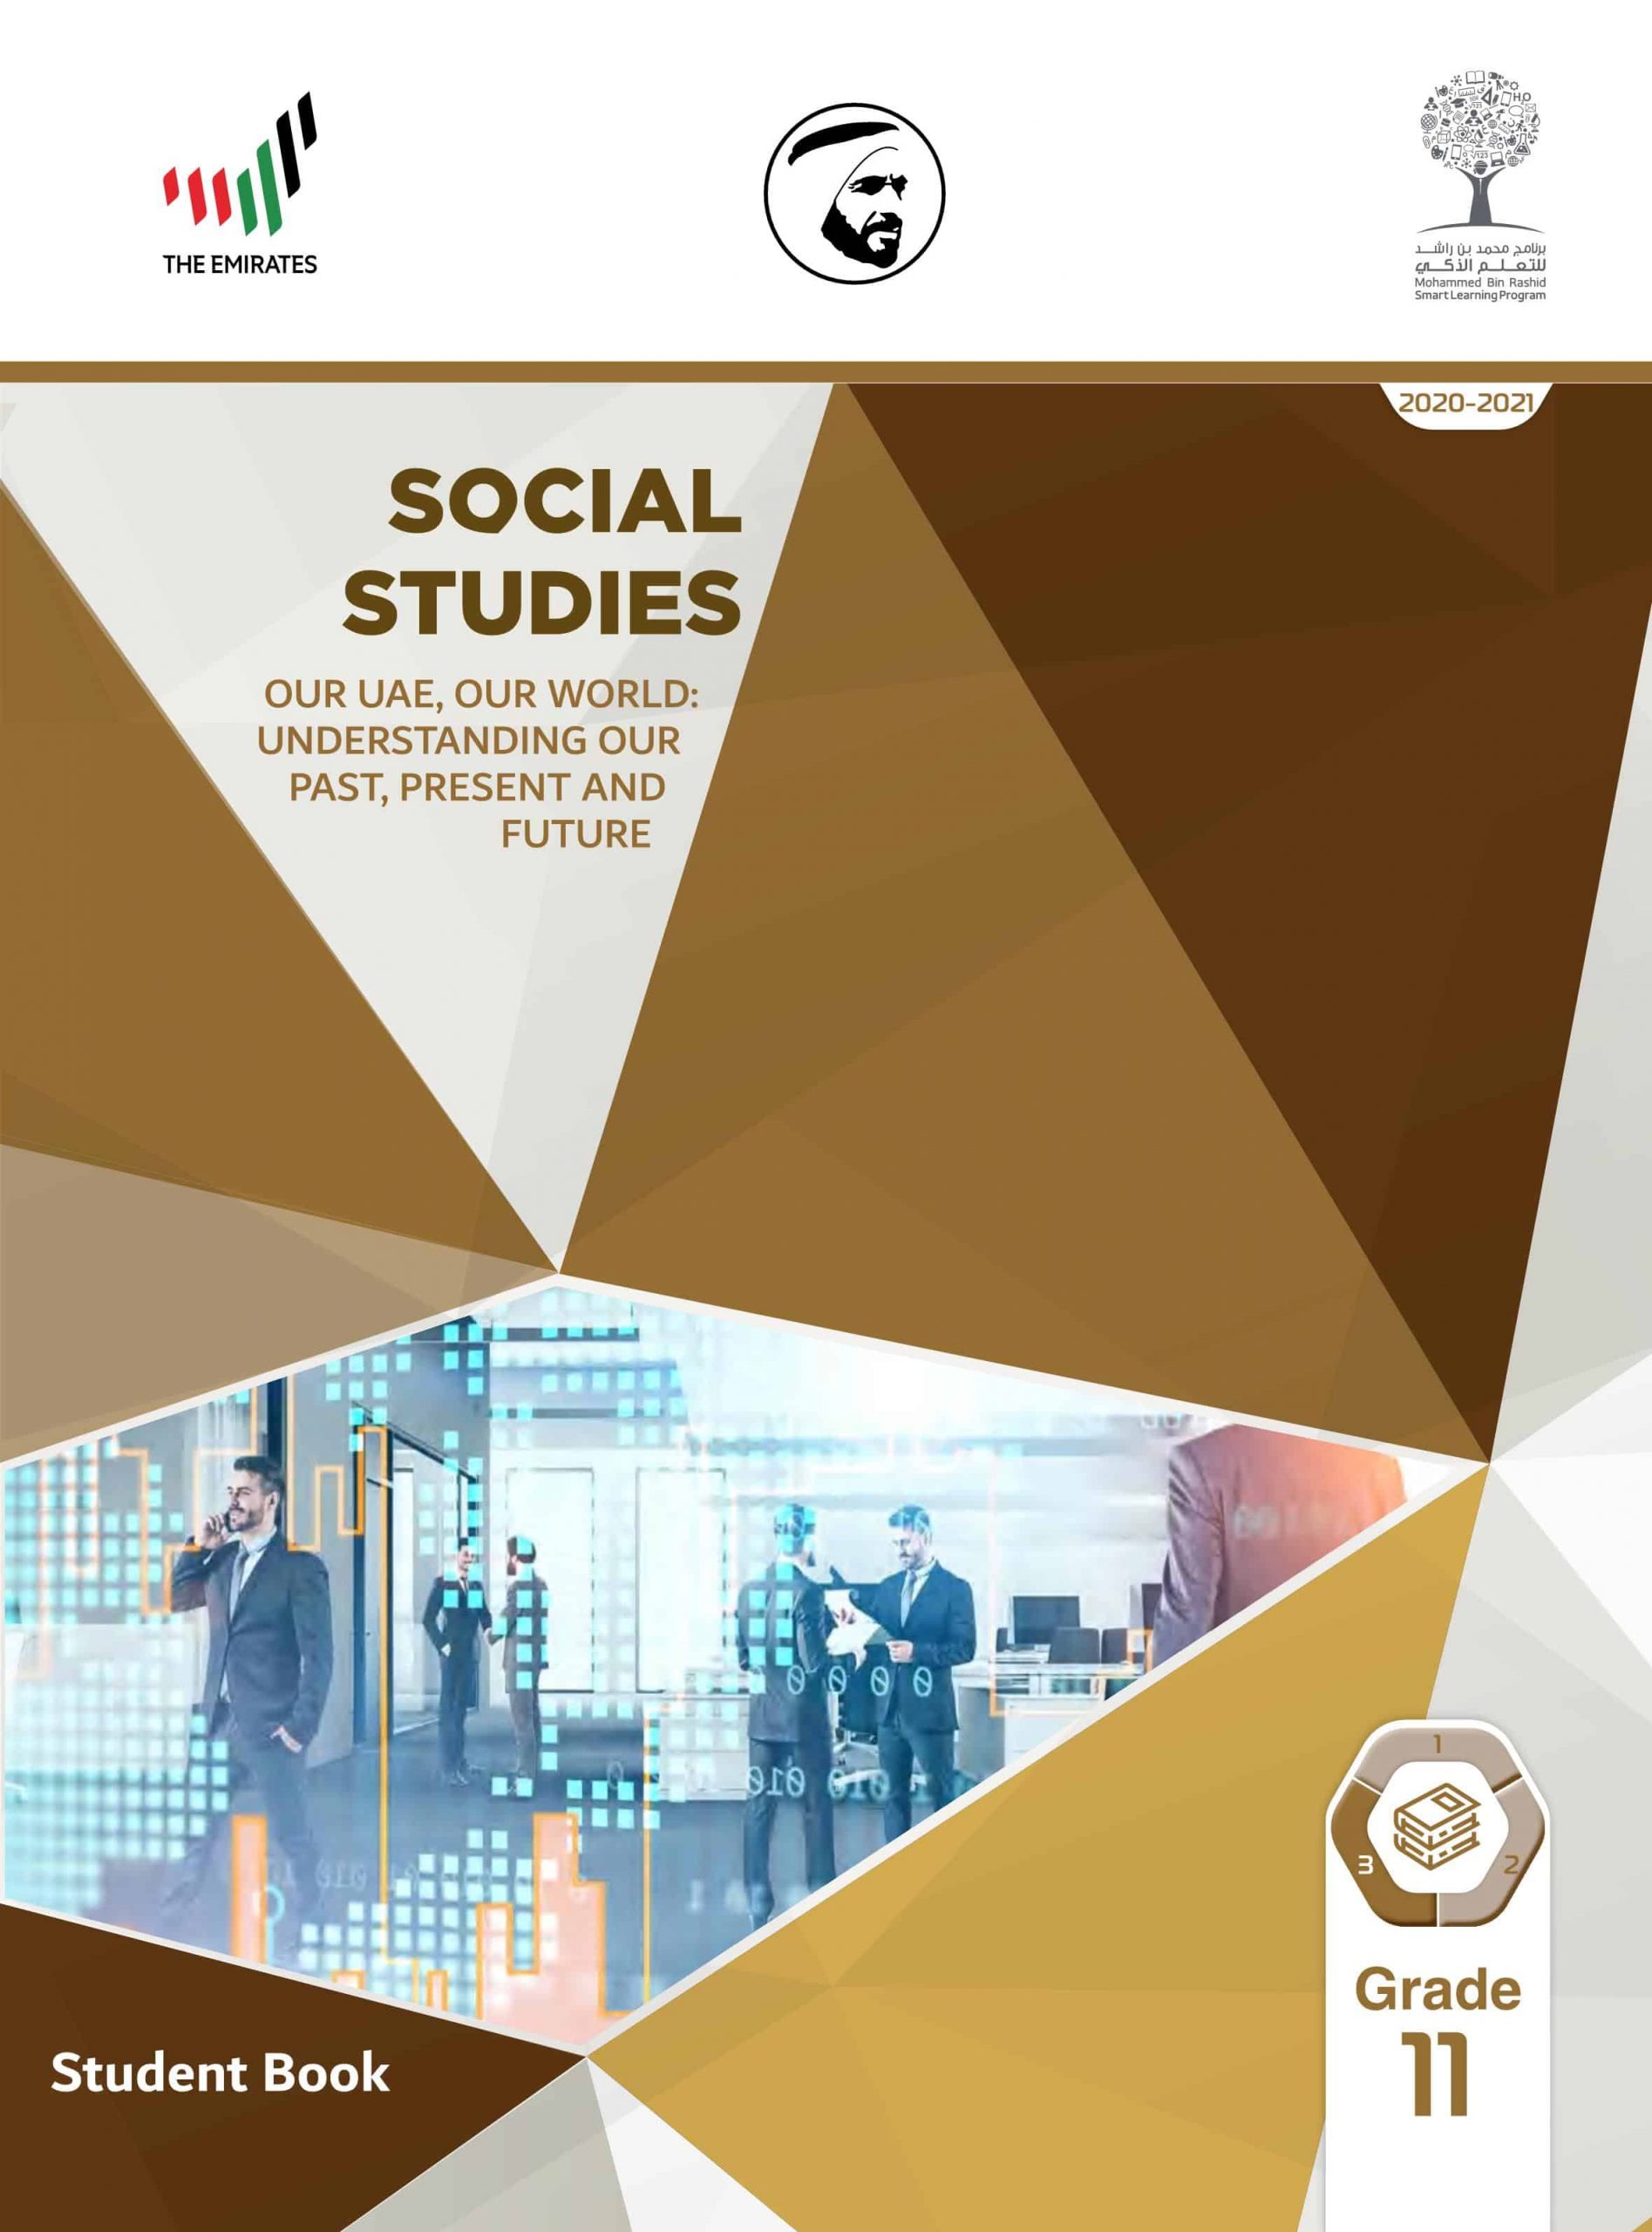 كتاب الطالب بالإنجليزي الفصل الدراسي الثالث 2020-2021 الصف الحادي عشر مادة الدراسات الإجتماعية والتربية الوطنية